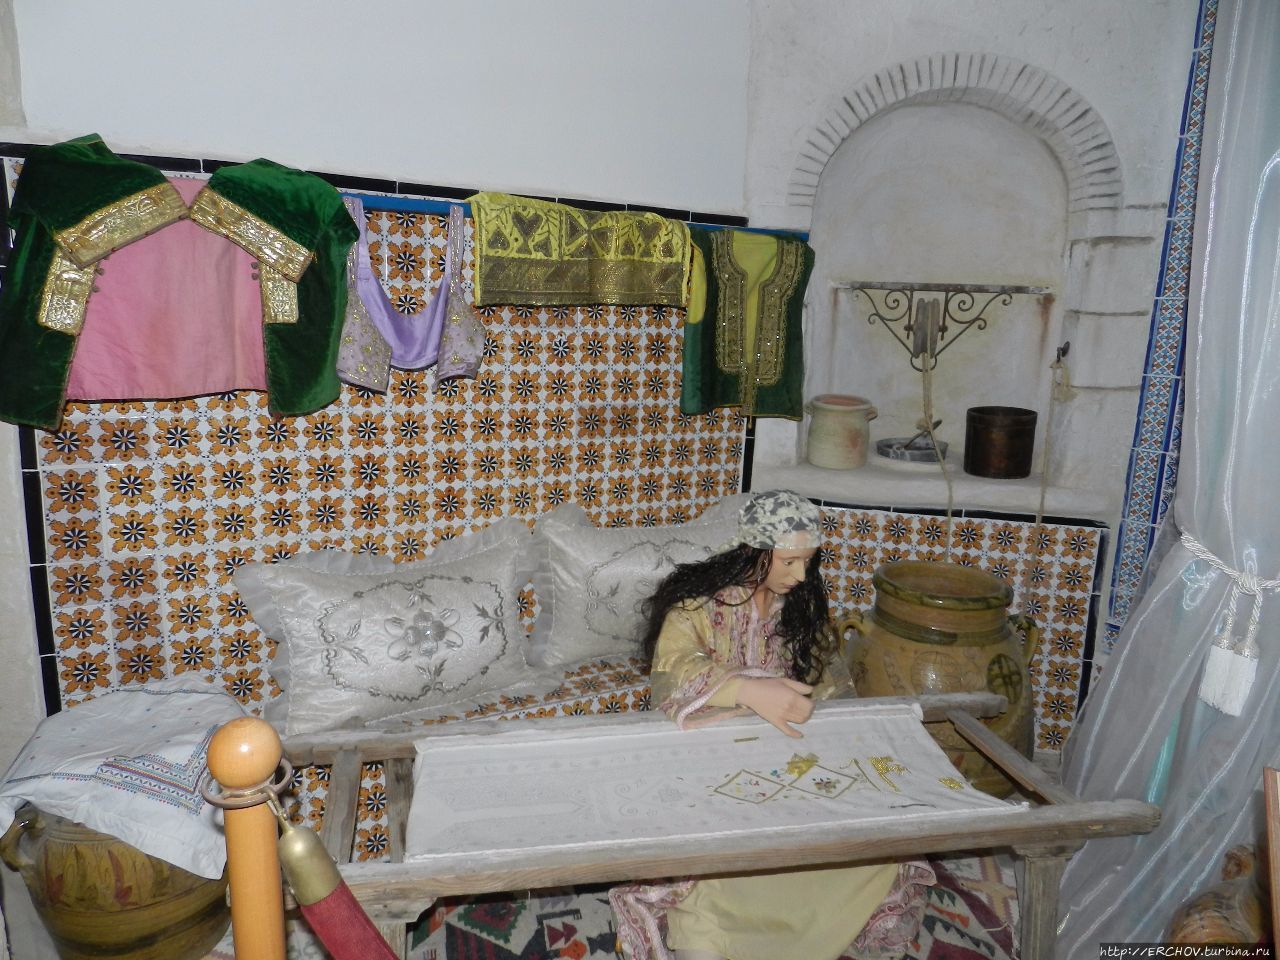 Исторический музей Хаммамета или дом Хадиджи